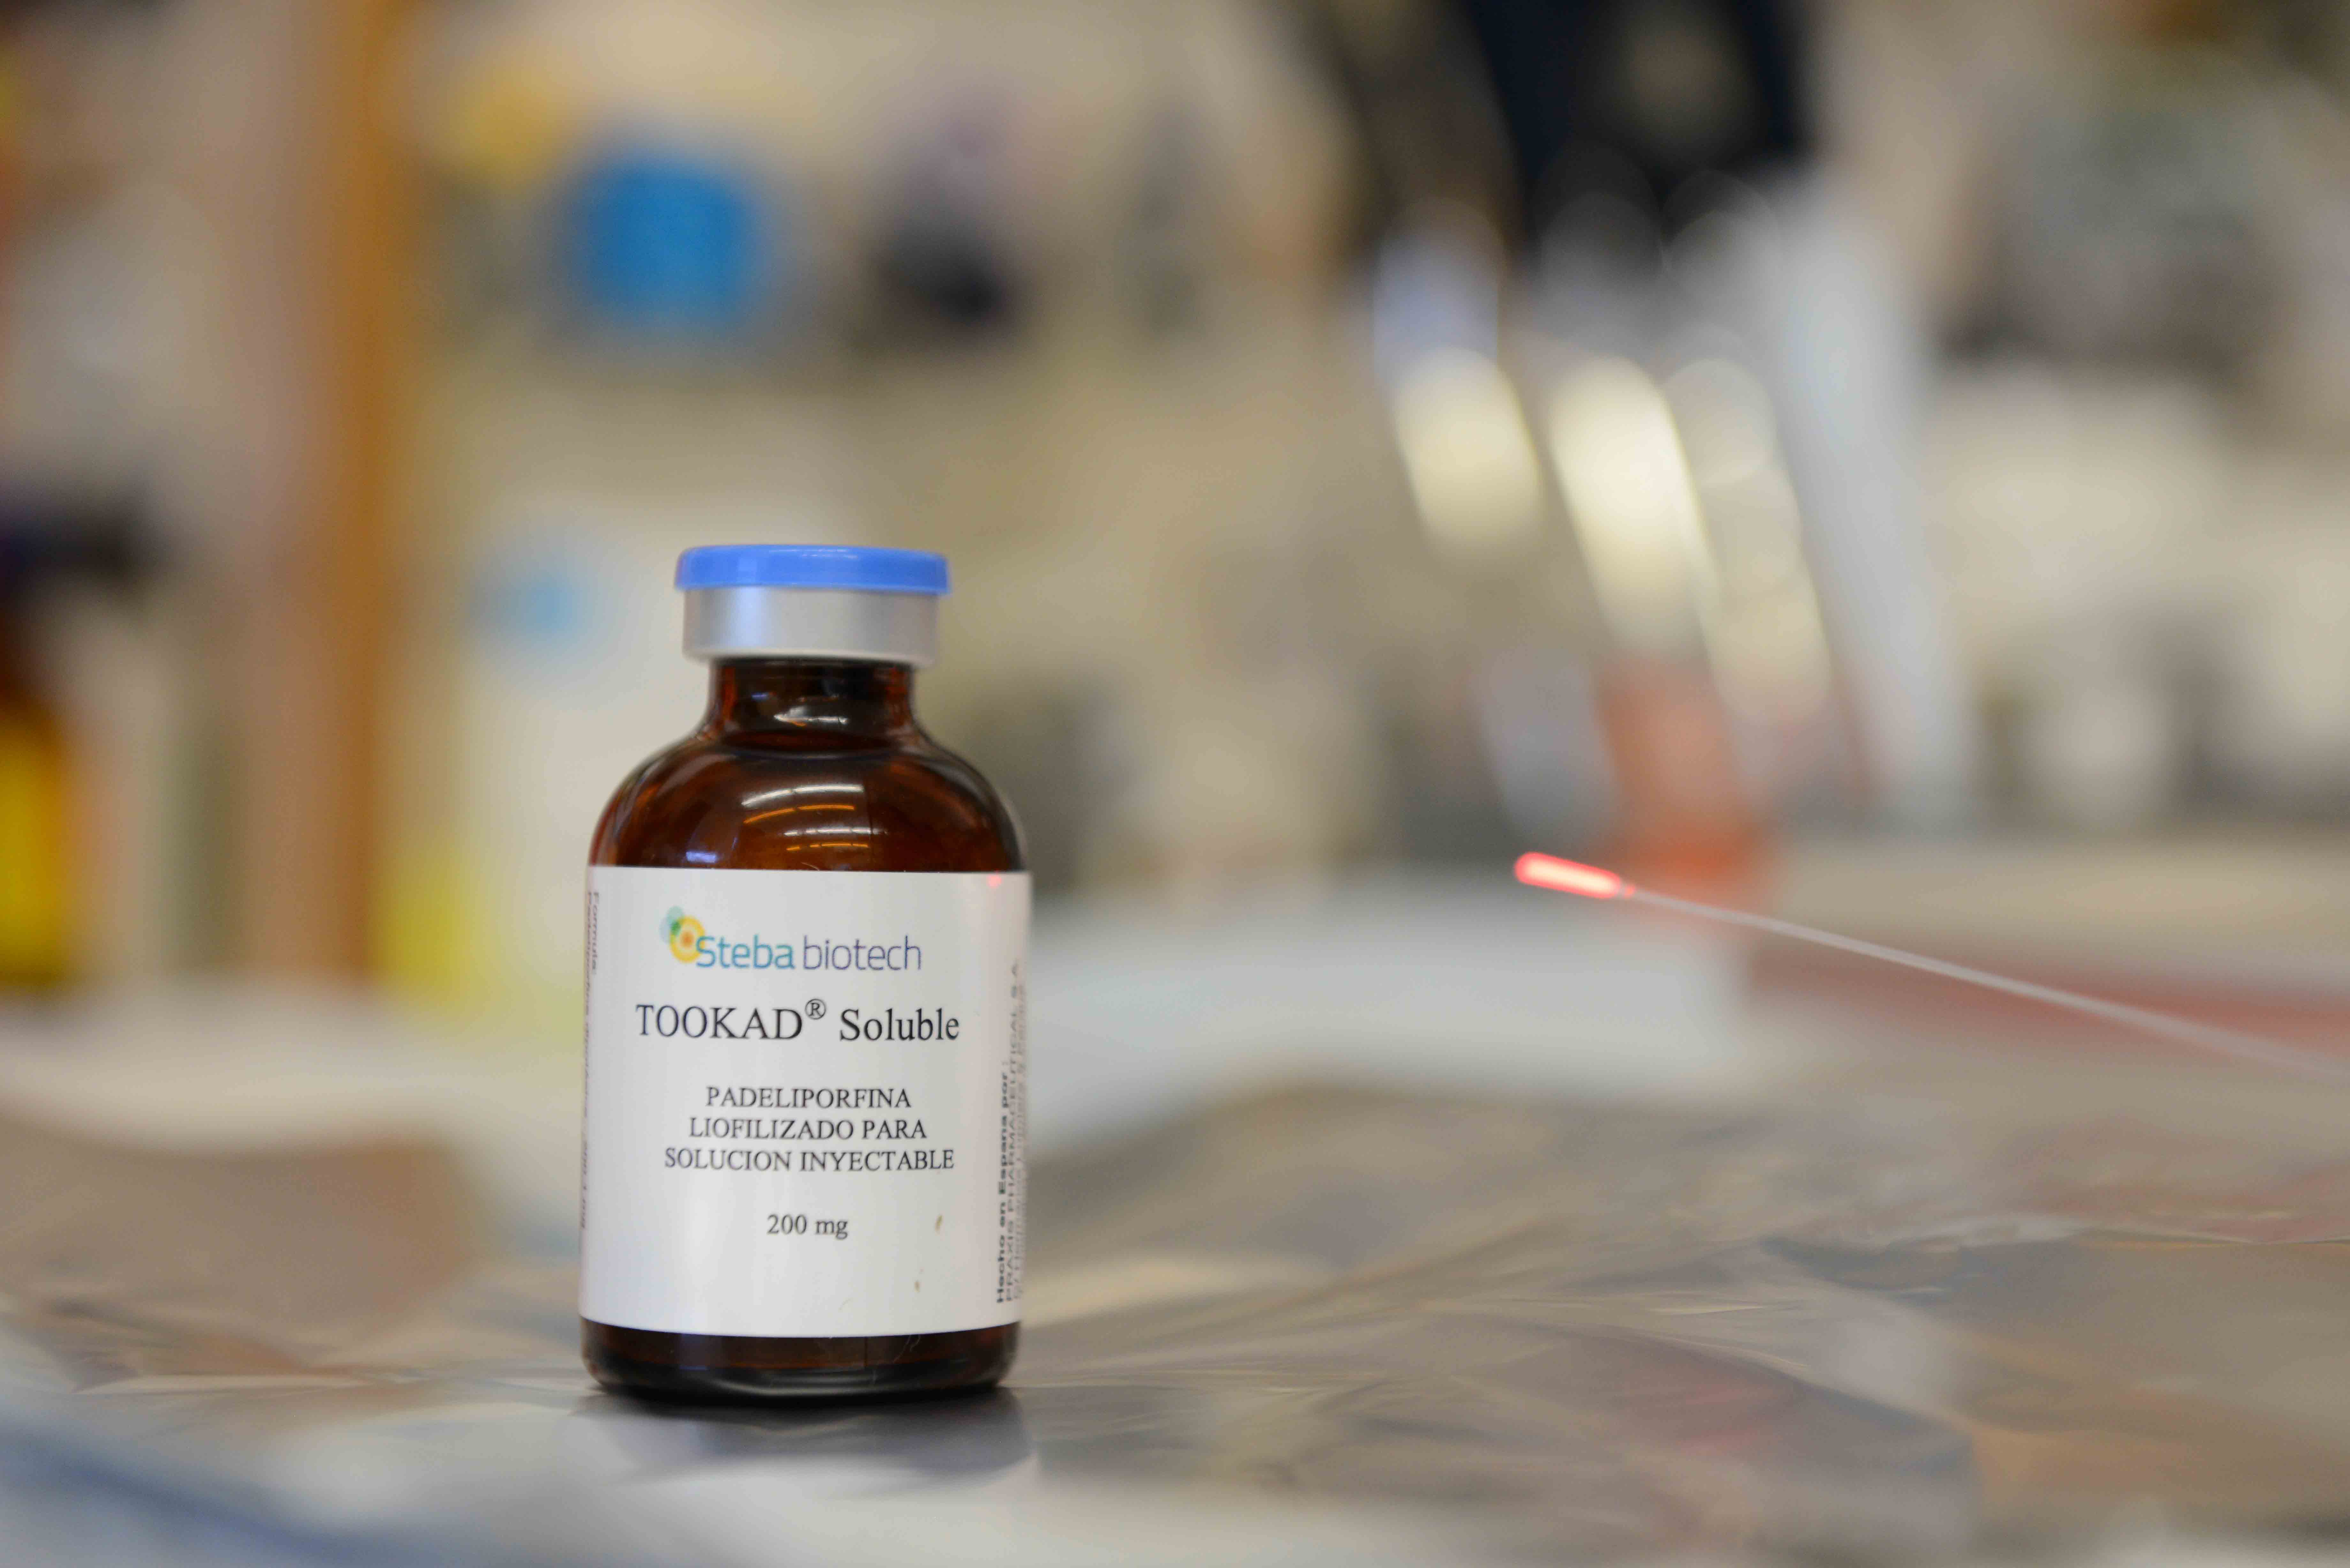 "תוקד", תרופה לטיפול בסרטן הערמונית שפותחה במכון ויצמן למדע, אושרה לשיווק באירופה